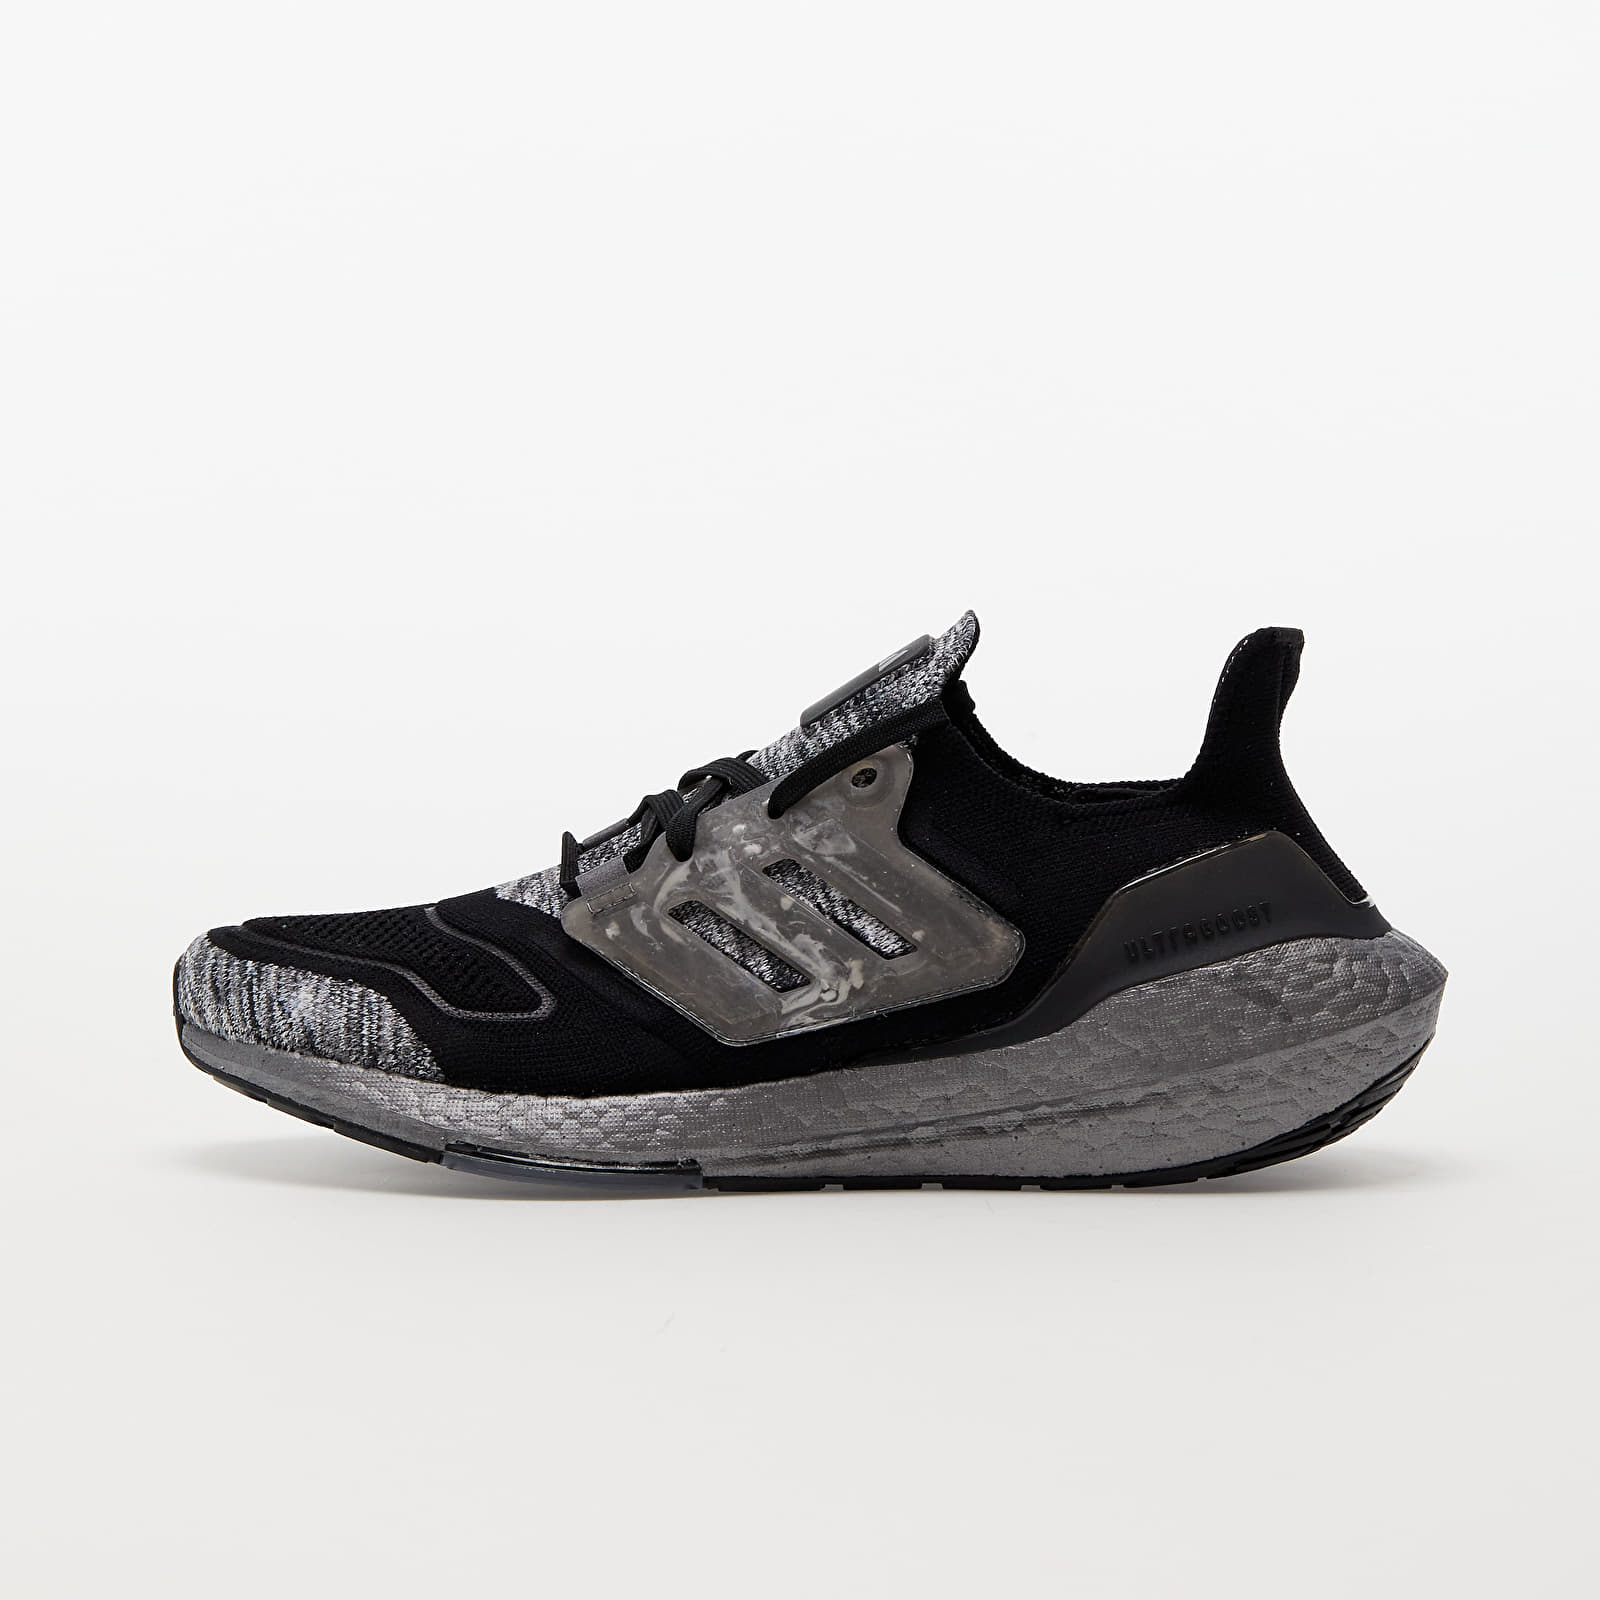 Turnschuhe und Schuhe für Männer adidas Performance UltraBOOST 22 Core Black